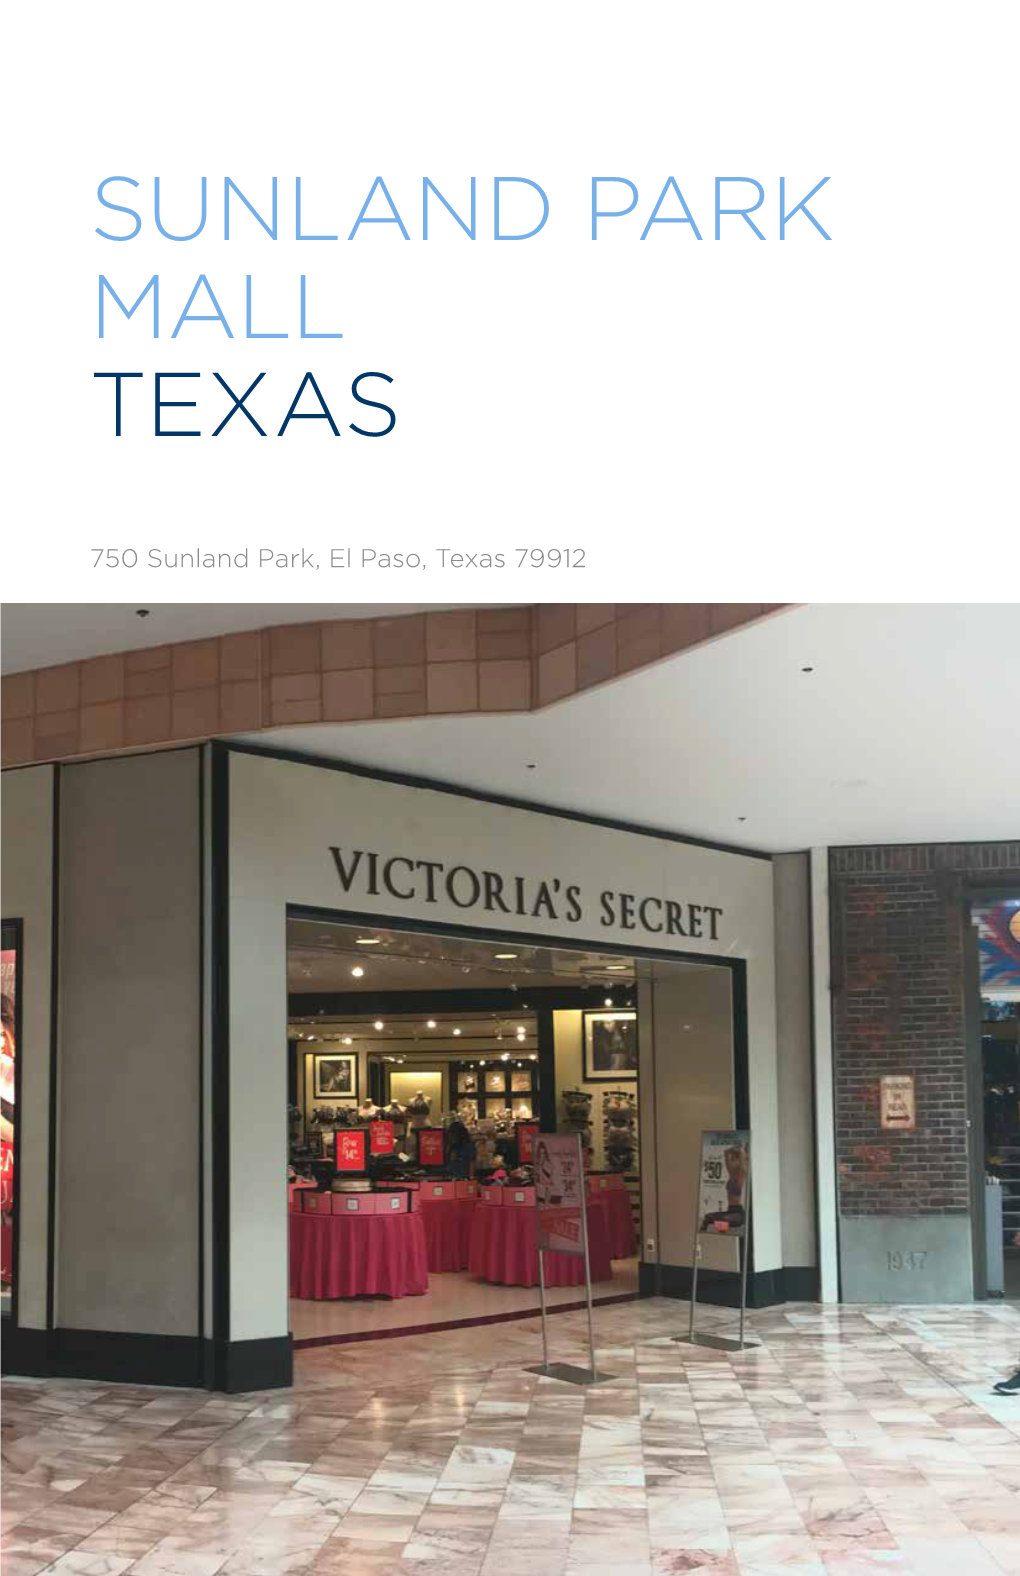 Sunland Park Mall Texas